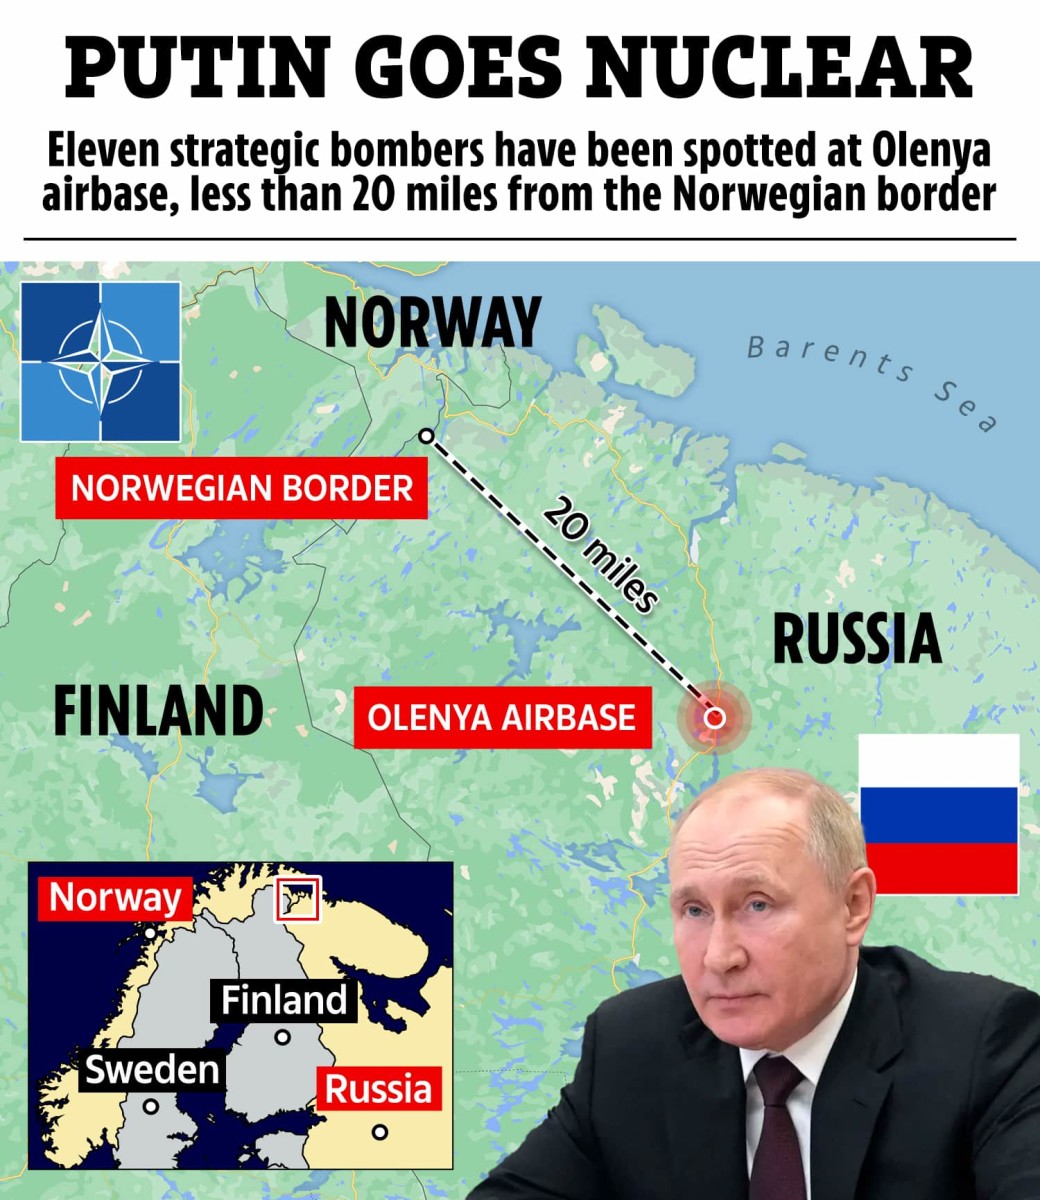 Putin moves nukes closer to NATO's border, will WW3 begin?